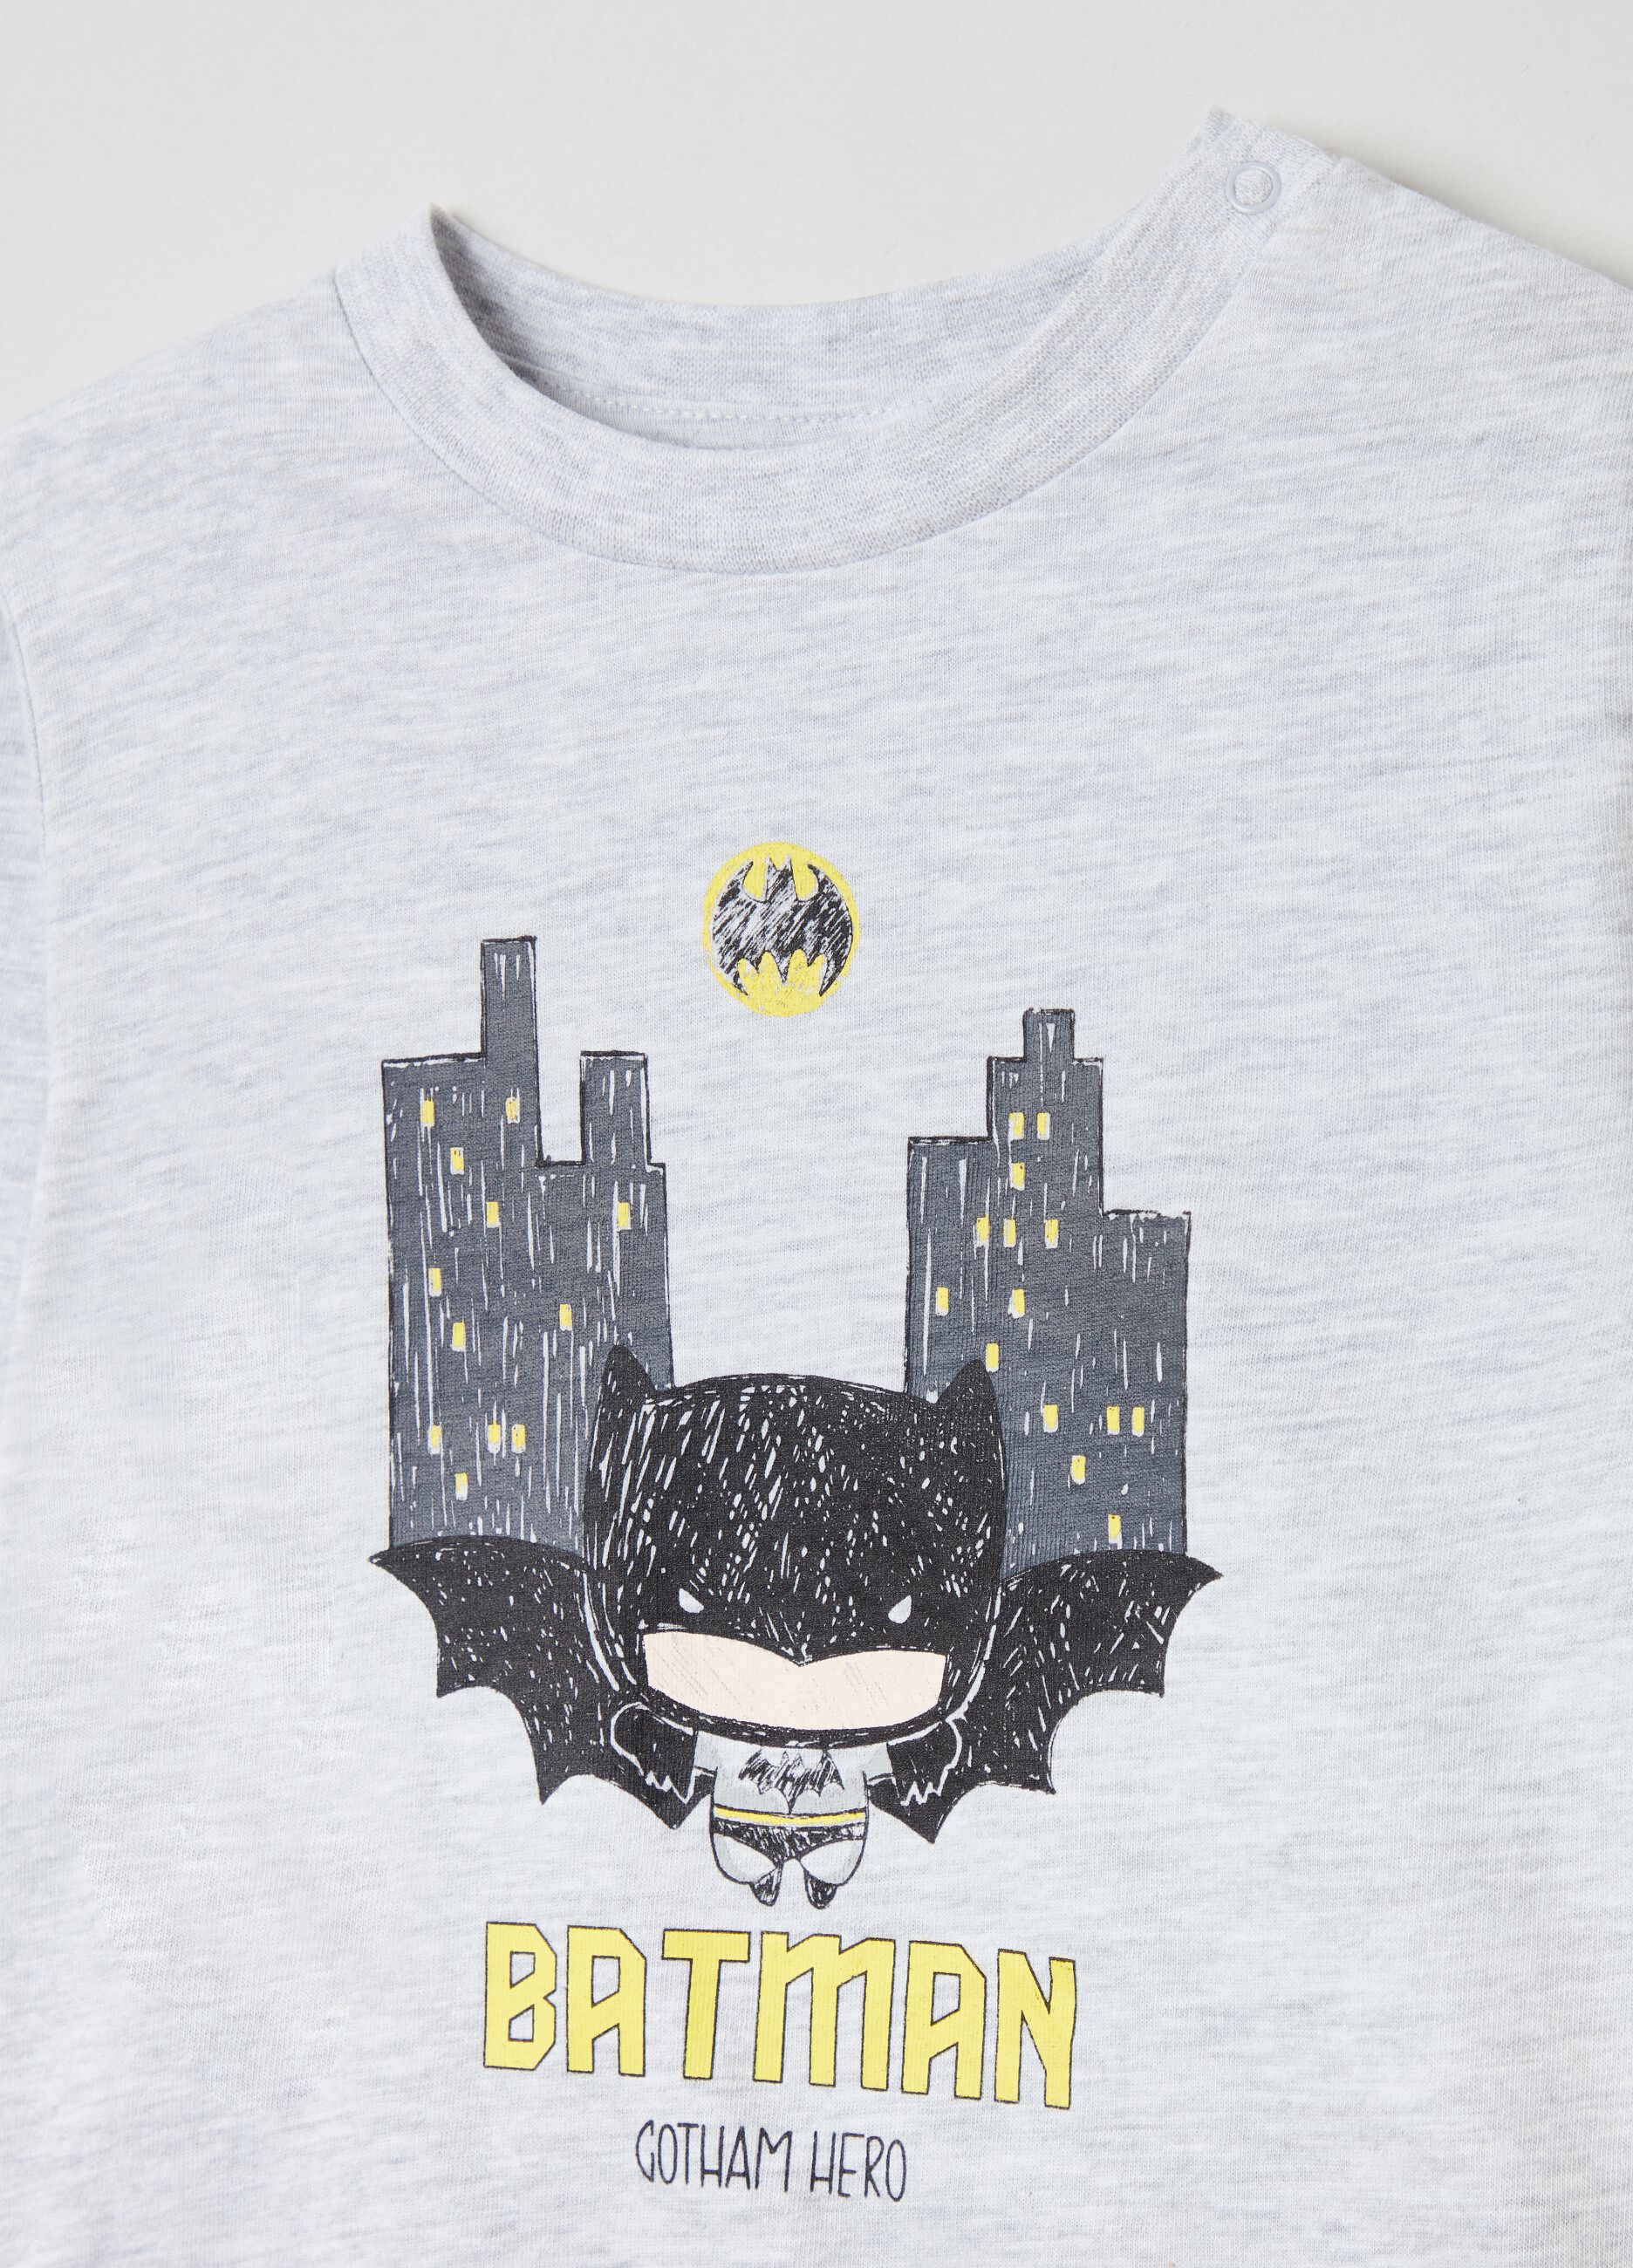 Long pyjamas with Batman print